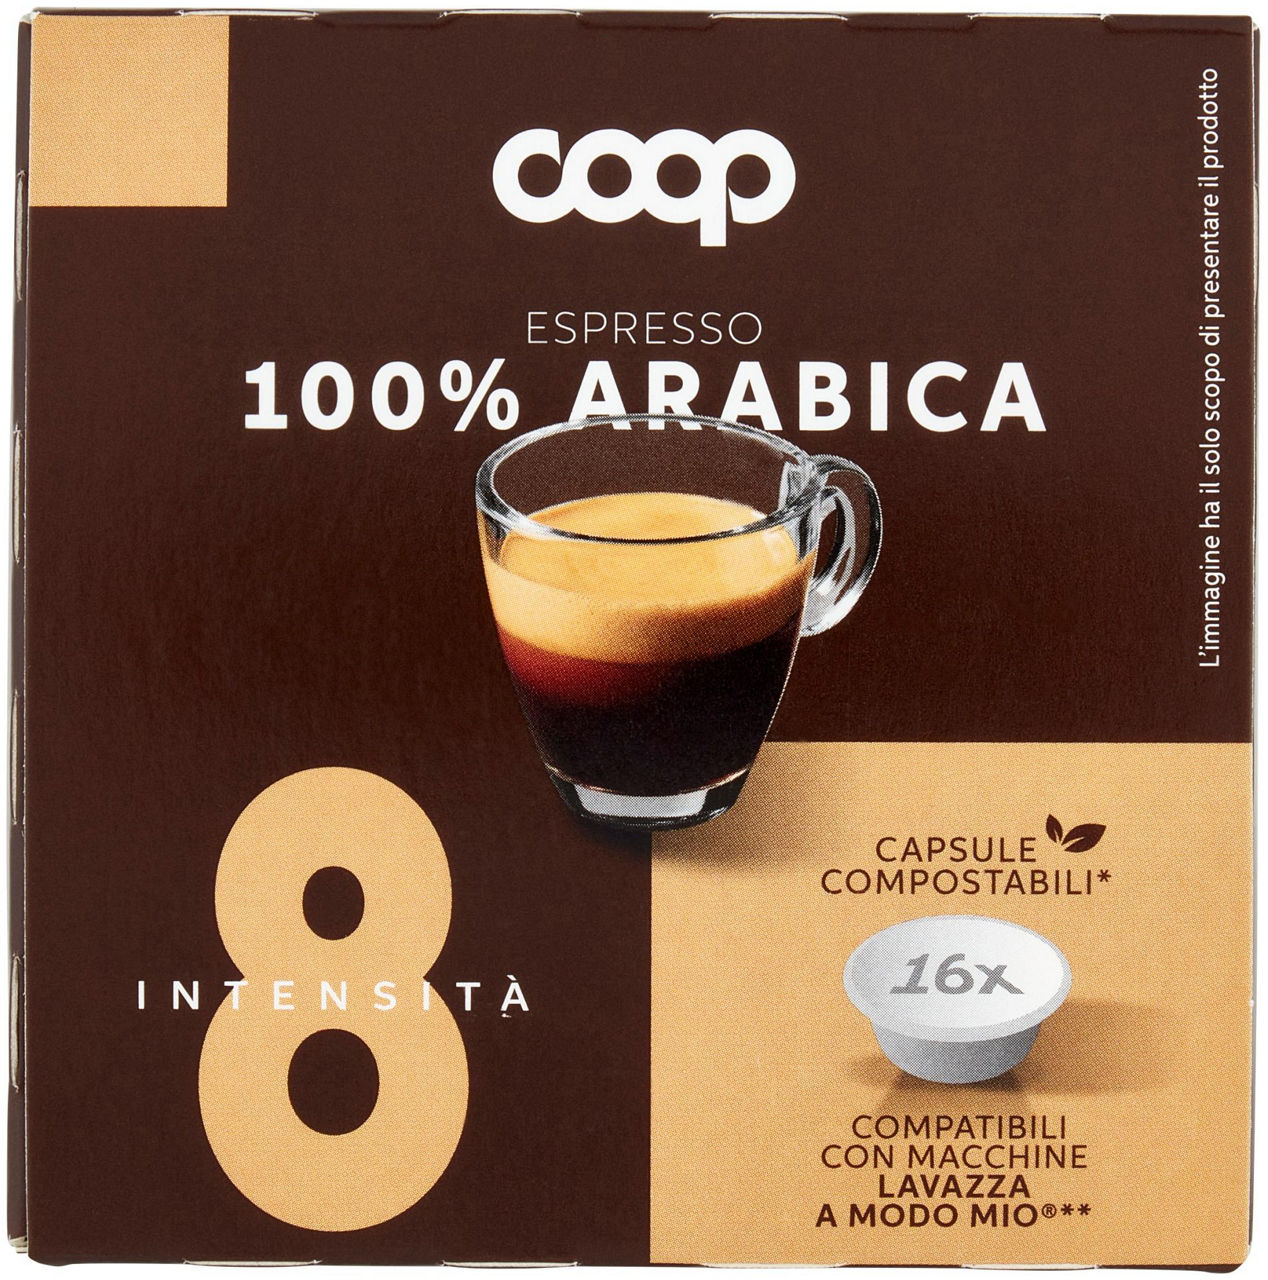 Caffe' capsule compatibili a modo mio coop miscela arabica pz 16x7,5g g 120